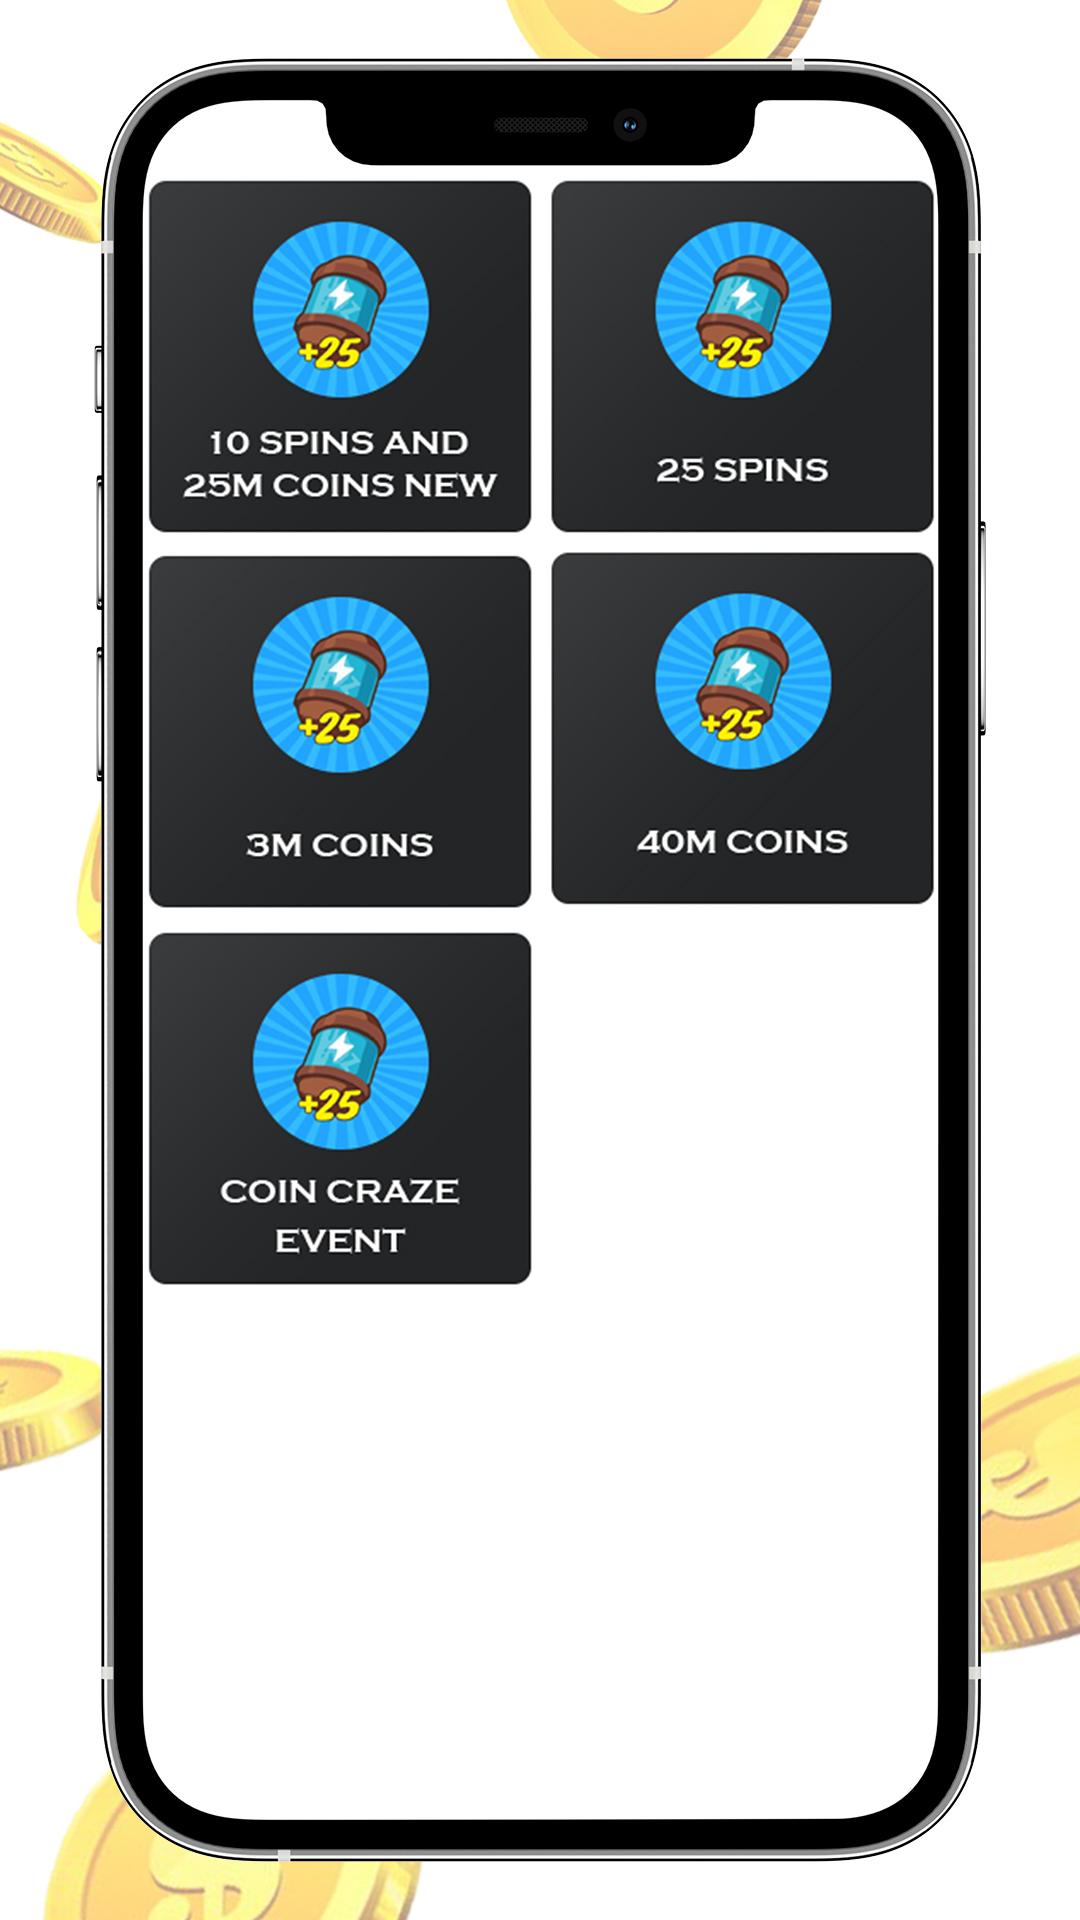 Coin Master events — Balloon Frenzy, Coin Craze, & more